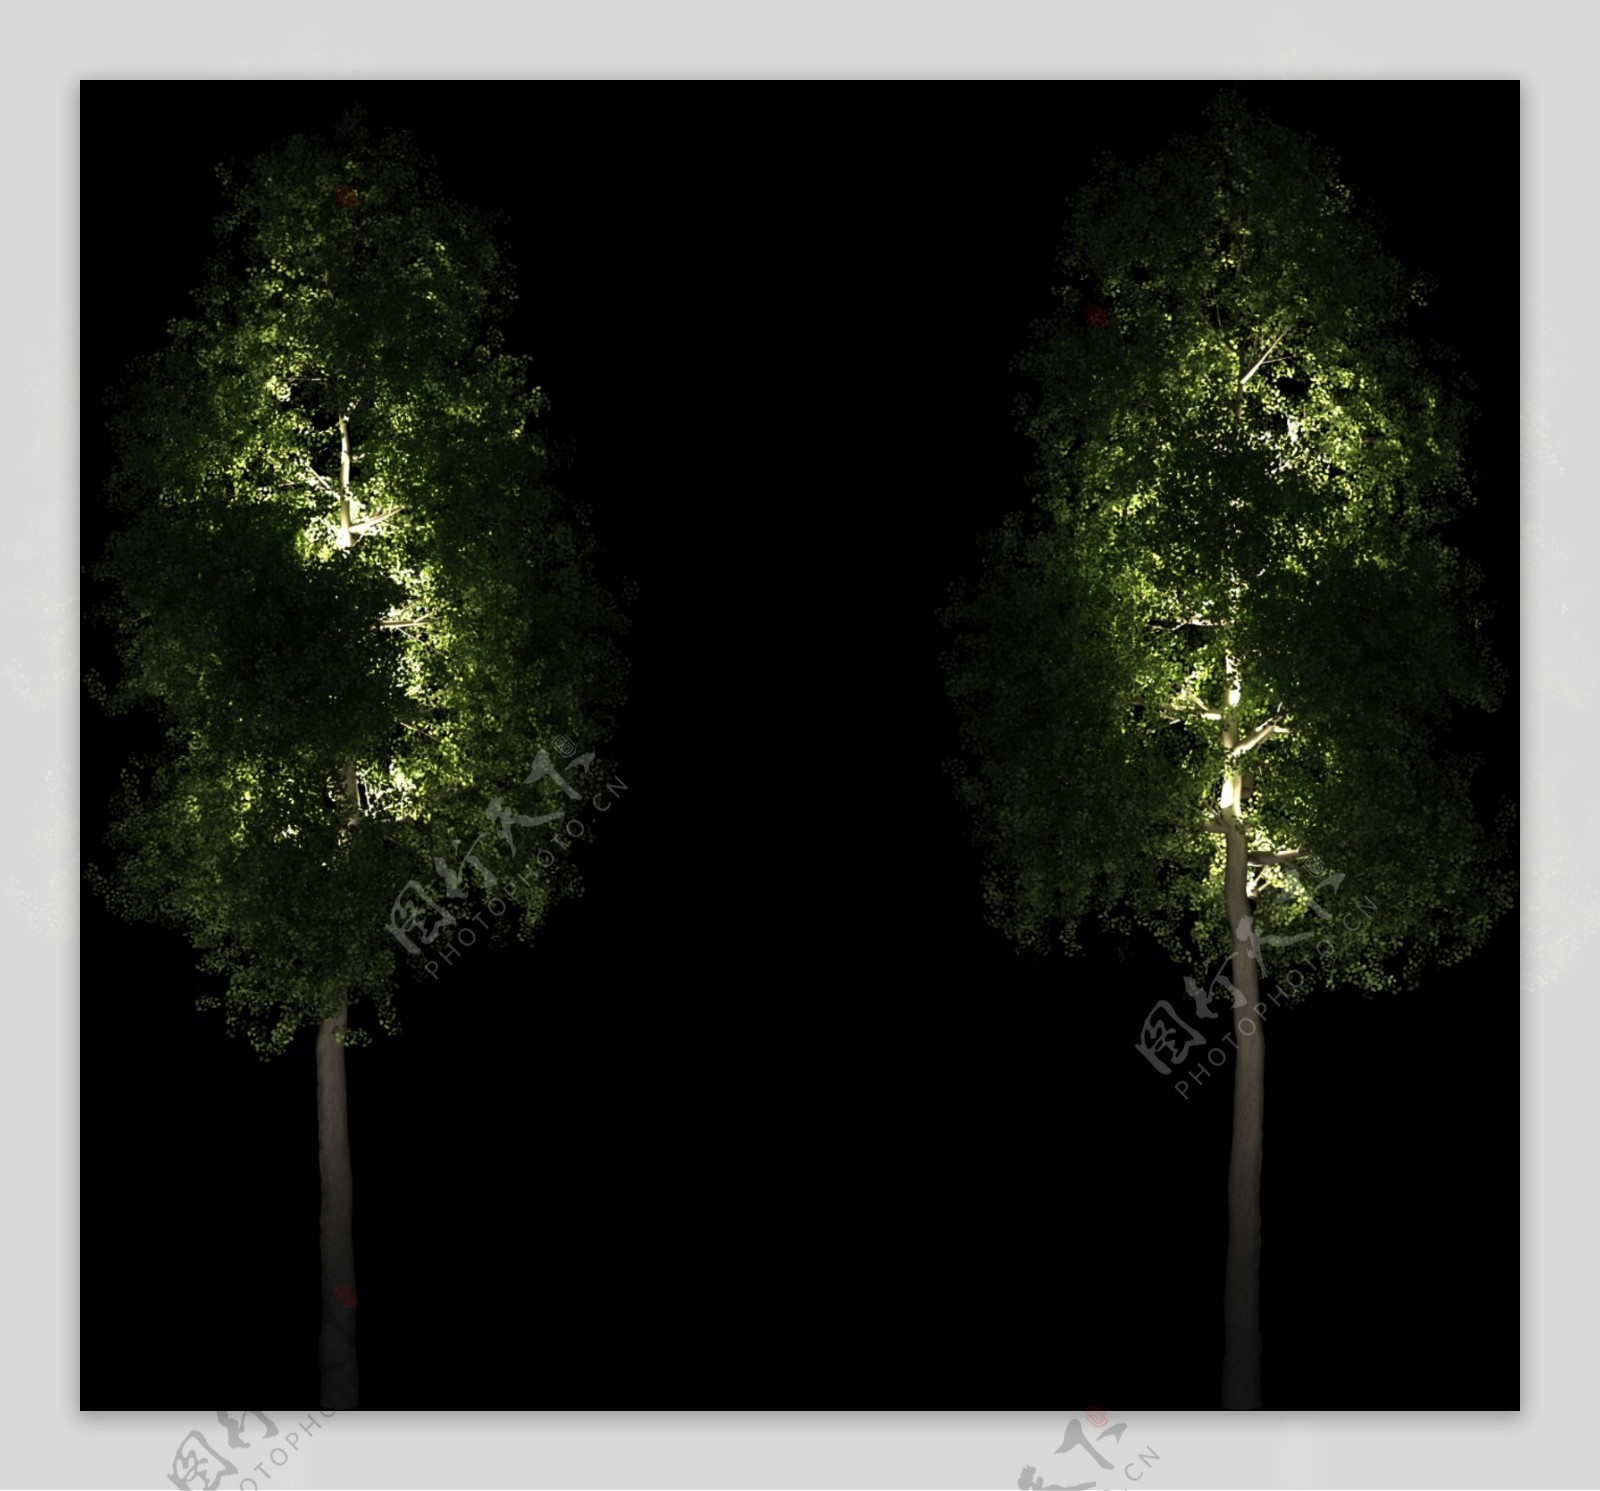 夜景树